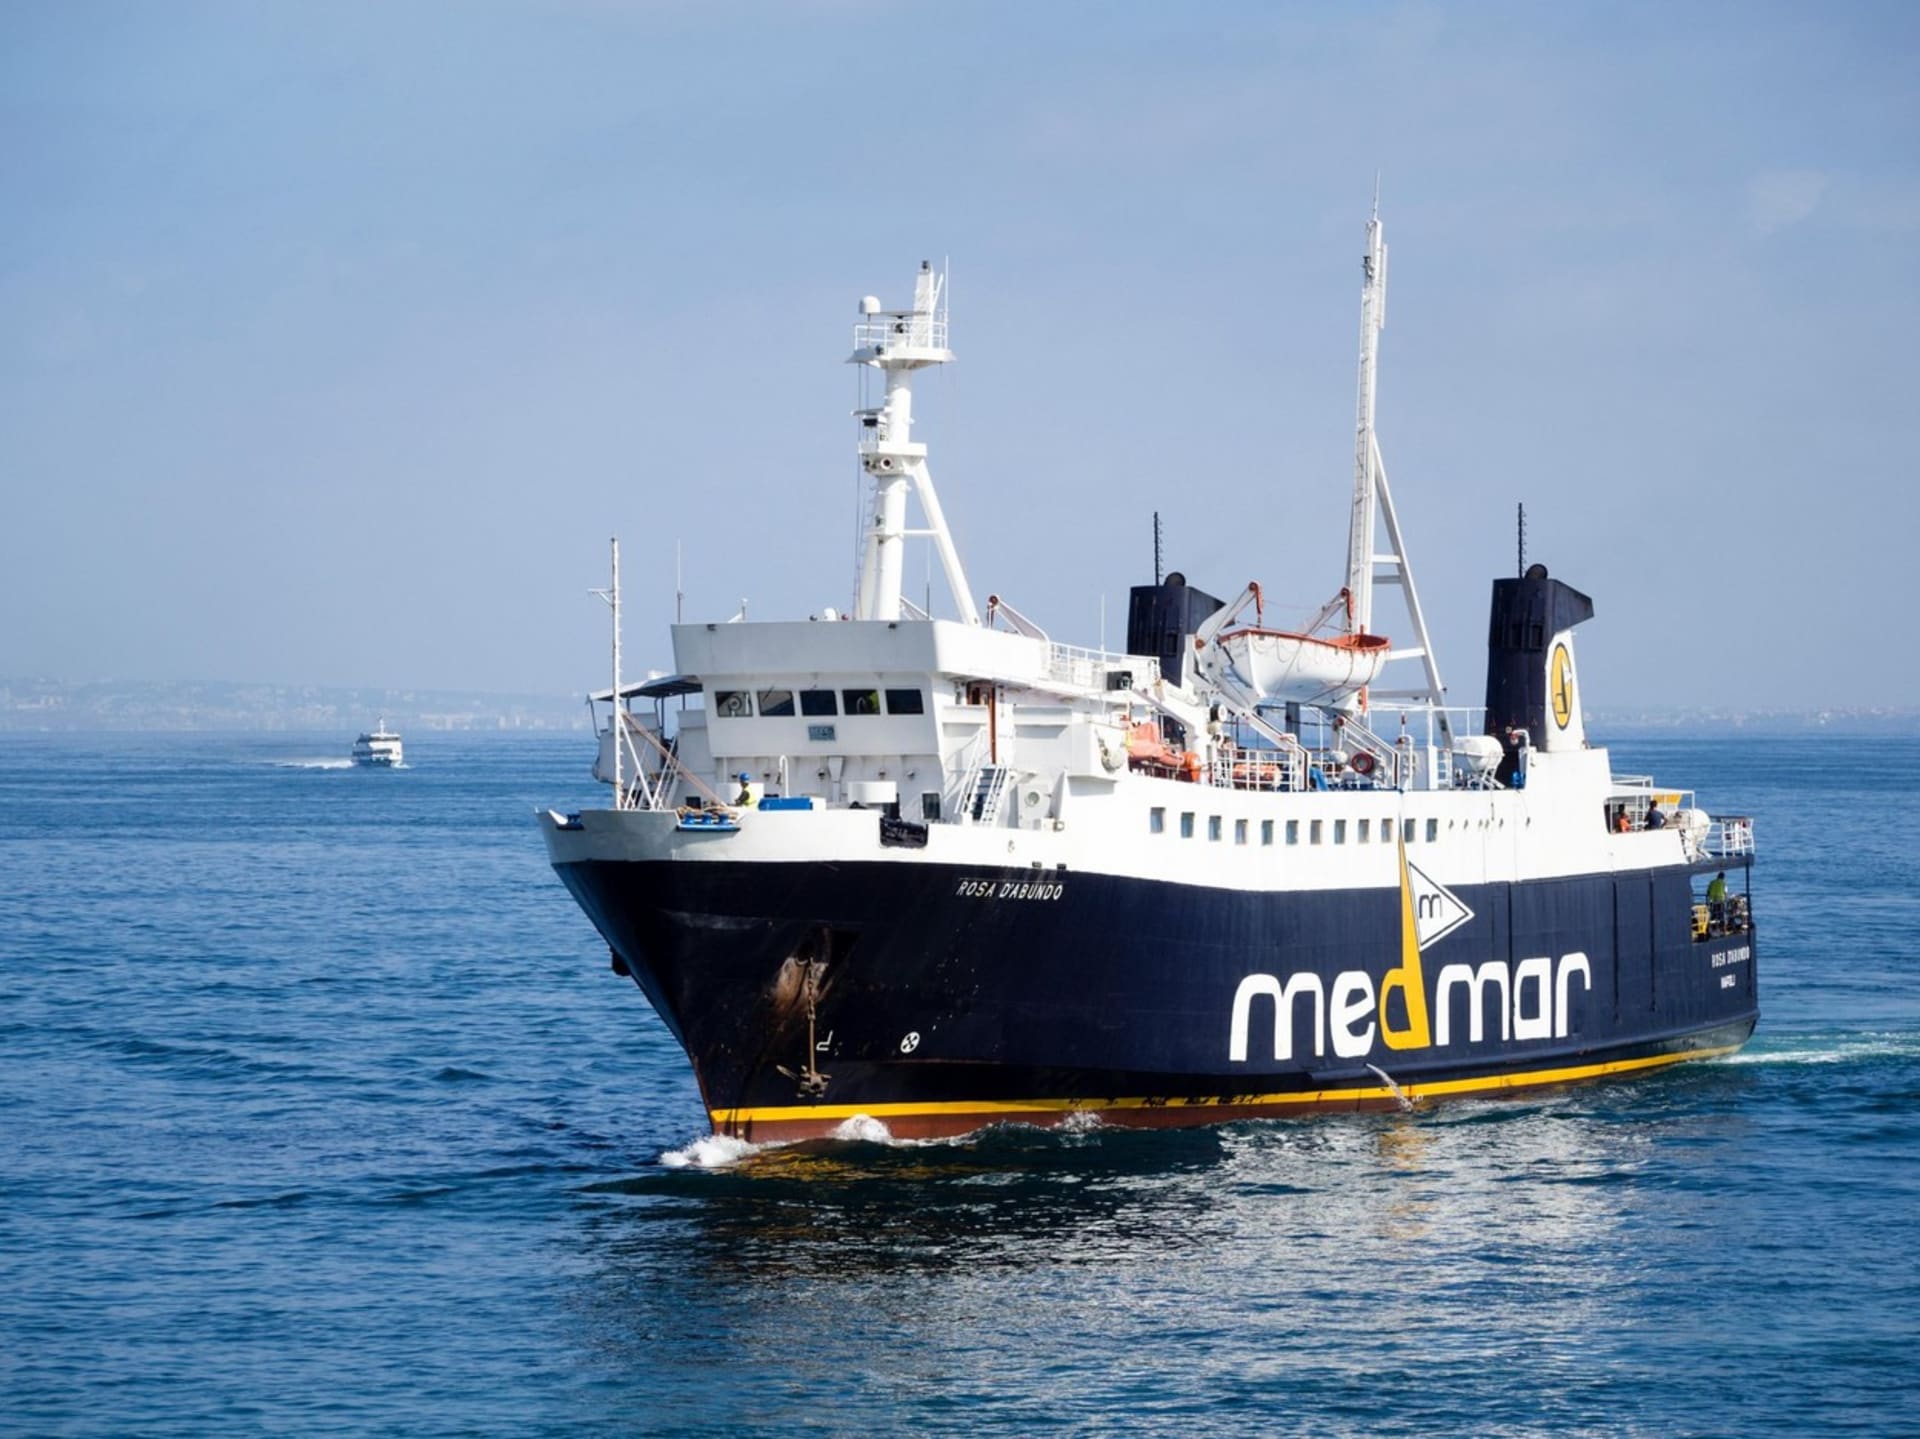 Trajekty společnosti Medmar zajišťují spojení mezi ostrovem Ponza a pevninskou Itálií